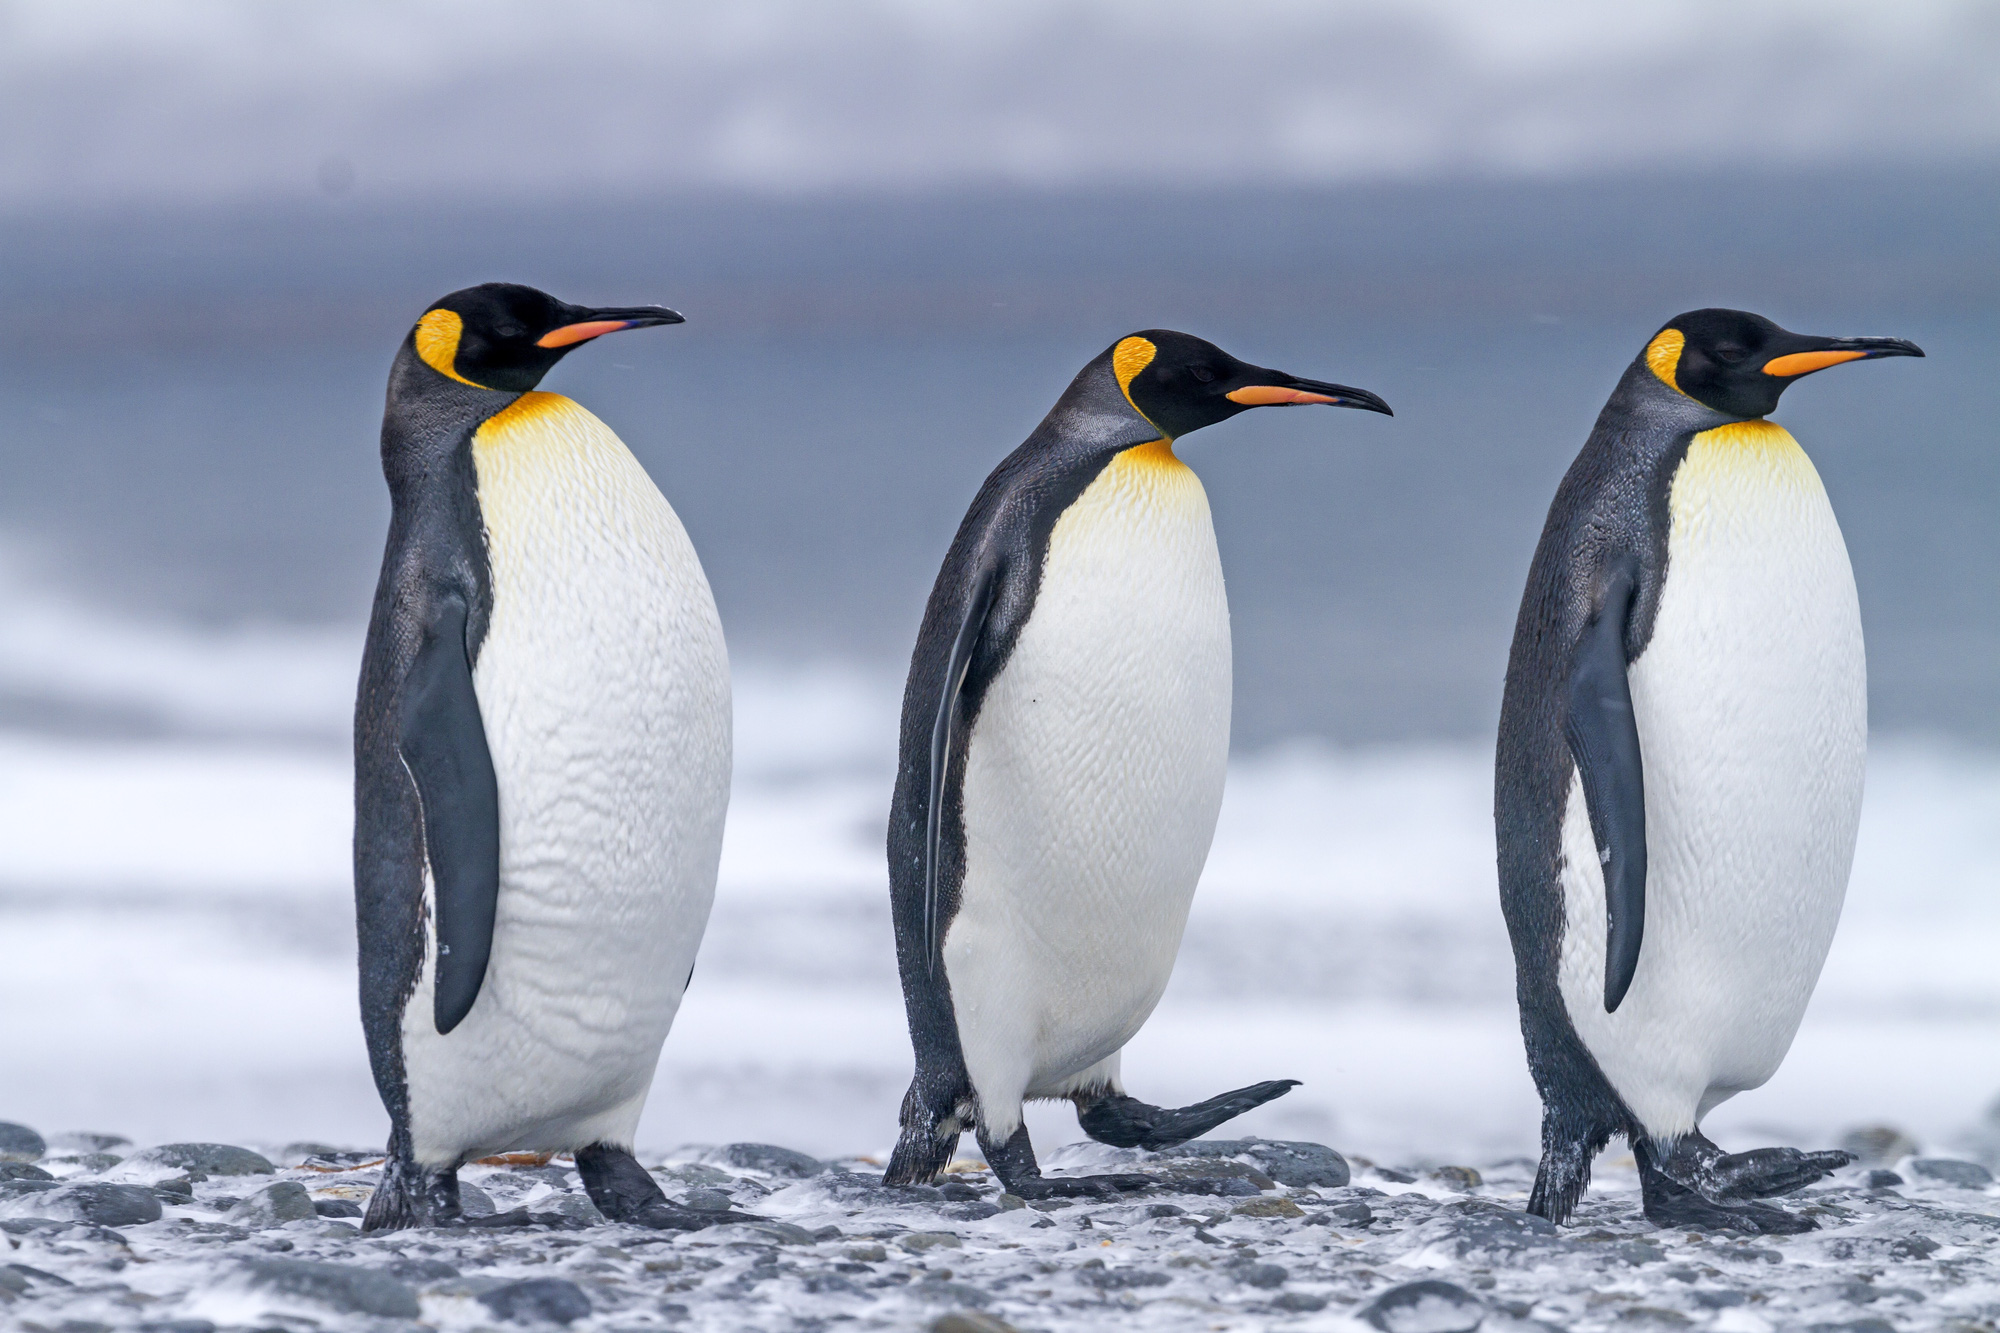 Nghiên cứu mới: Phân chim cánh cụt tạo ra khí gây cười, hít thở không khí trong khu vực thôi cũng đủ quặn ruột - Ảnh 1.